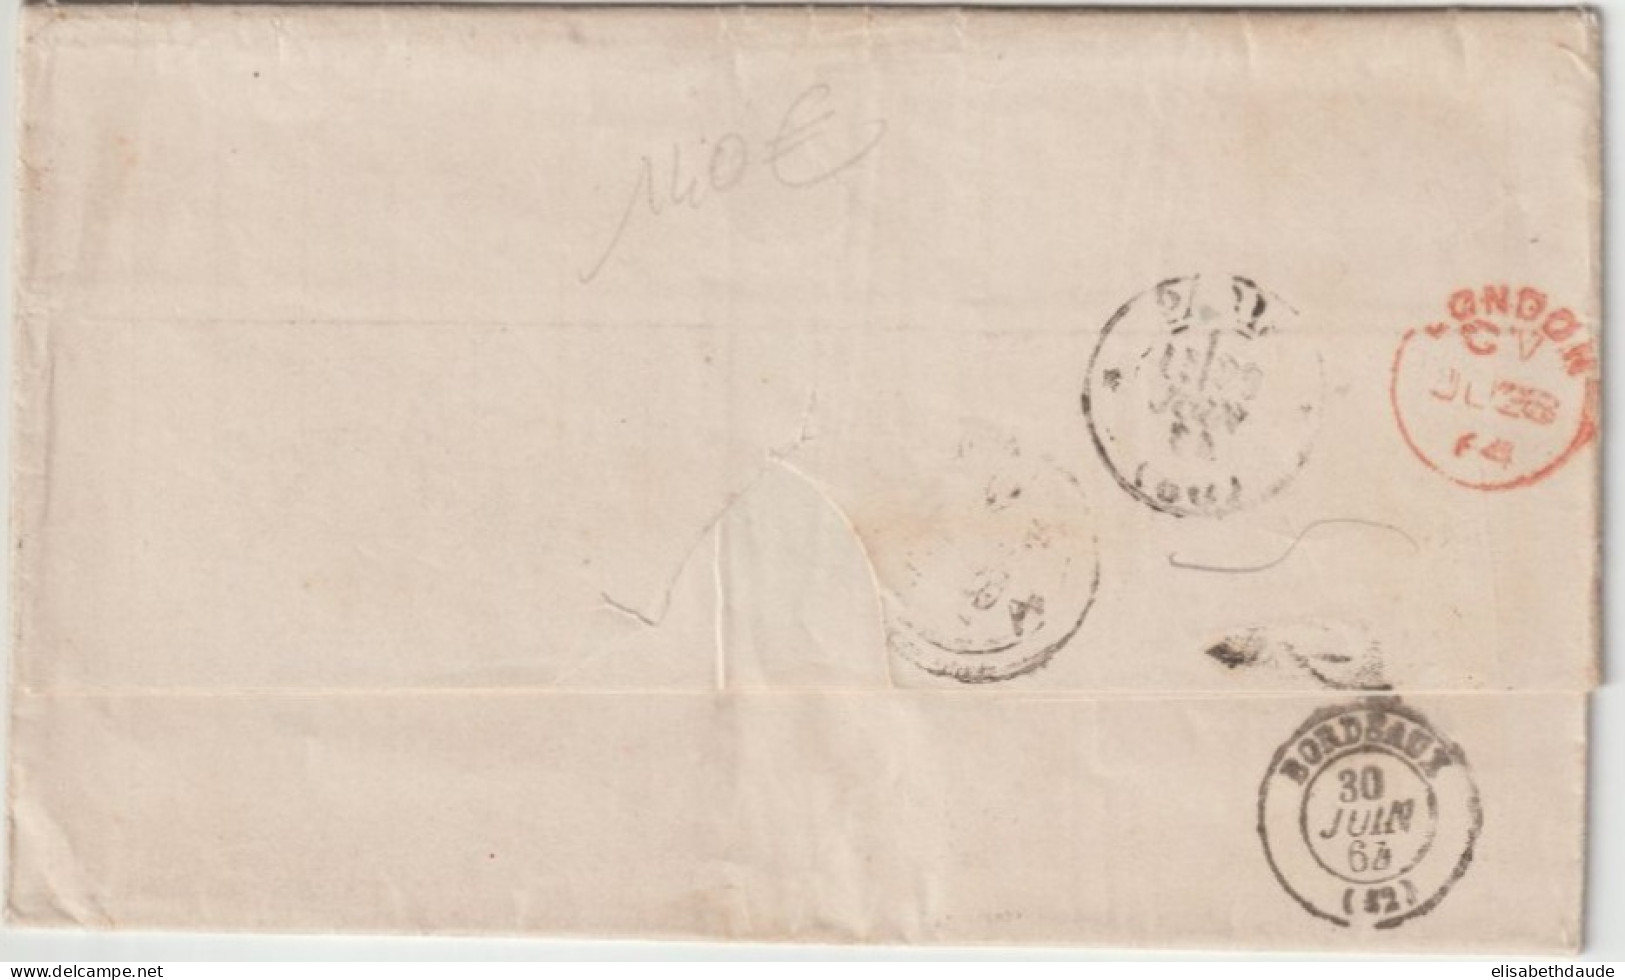 1864 - ENTREE MARITIME VOIE ANGLAISE (AMBULANT) + MARQUE D'ECHANGE 1F60c Sur LETTRE De HABANA (C UBA) ! - Poste Maritime